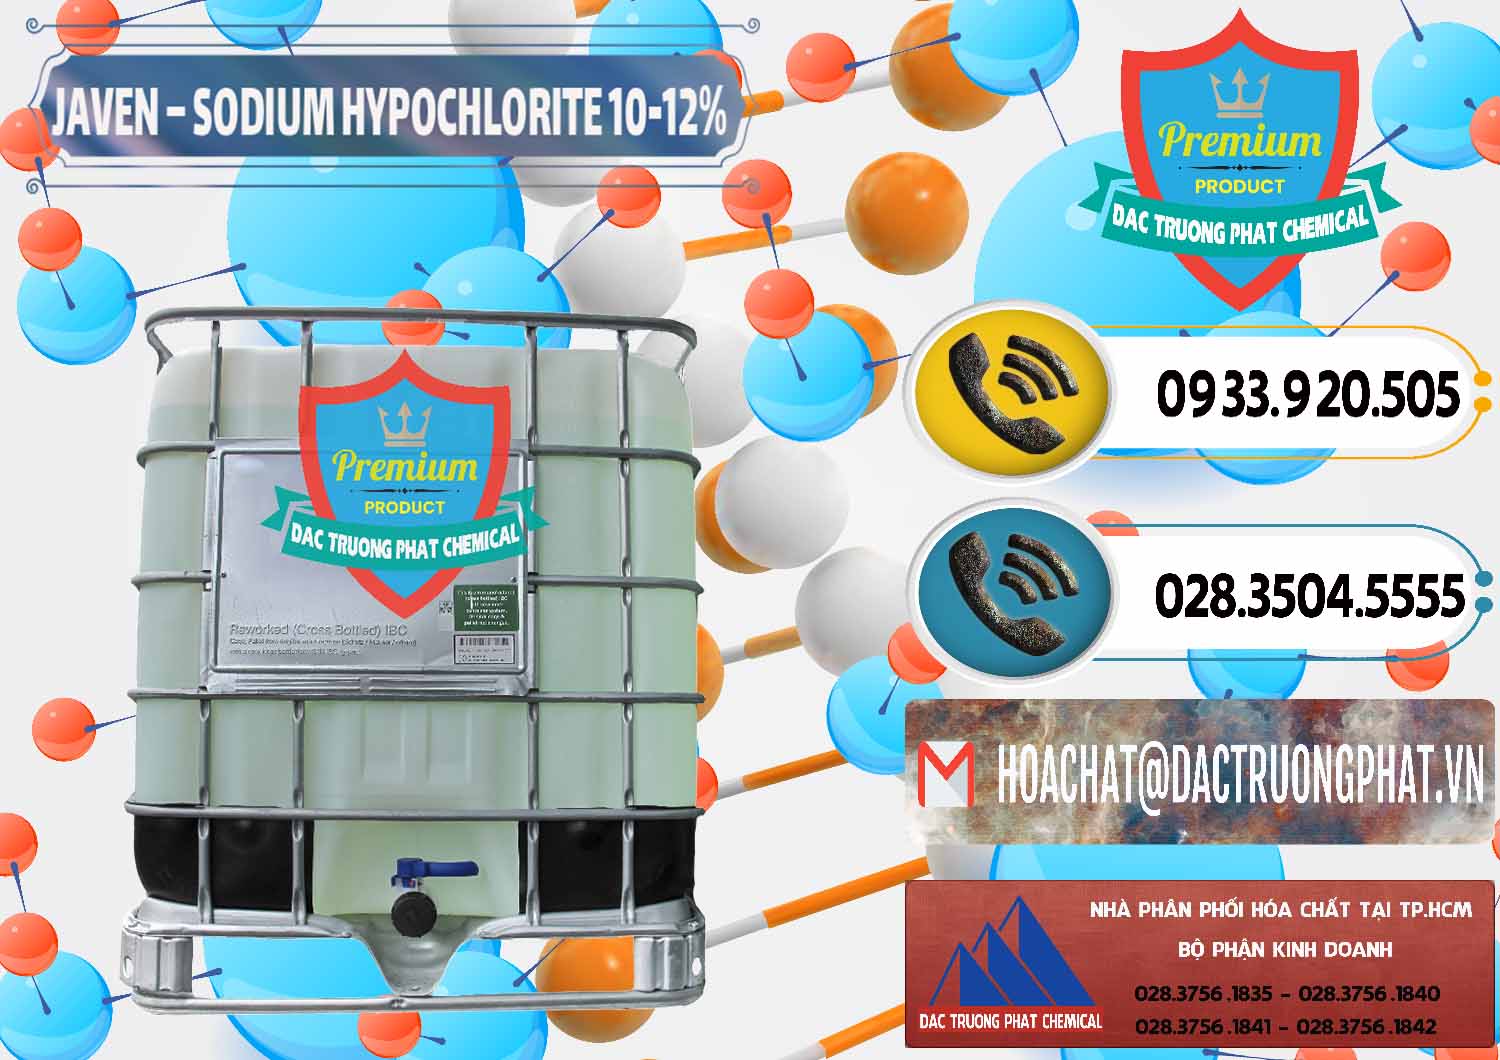 Công ty phân phối và cung cấp Javen - Sodium Hypochlorite 10-12% Việt Nam - 0188 - Phân phối và cung cấp hóa chất tại TP.HCM - hoachatdetnhuom.vn